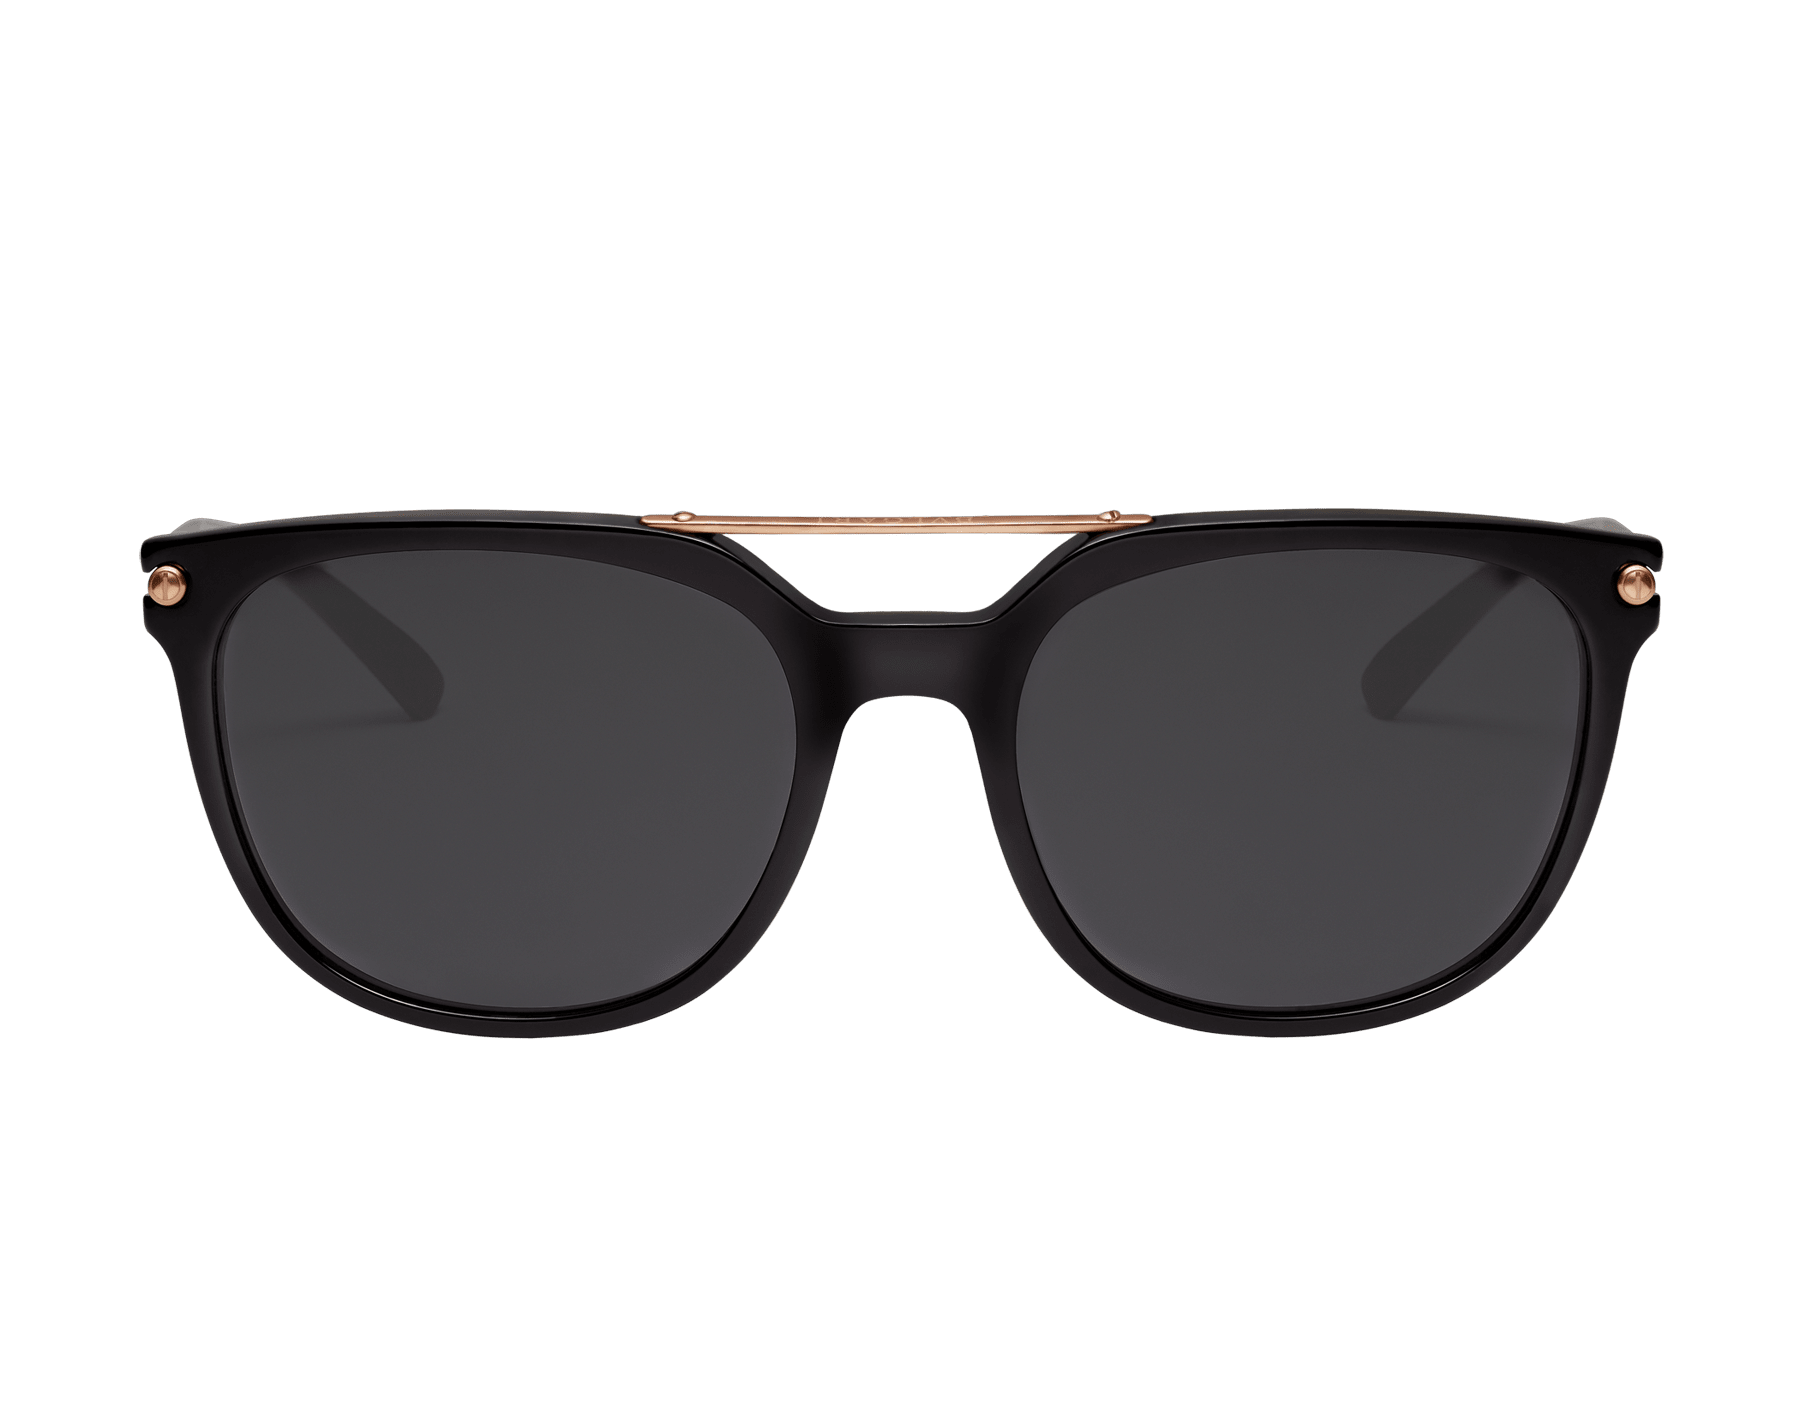 bvlgari aviator sunglasses